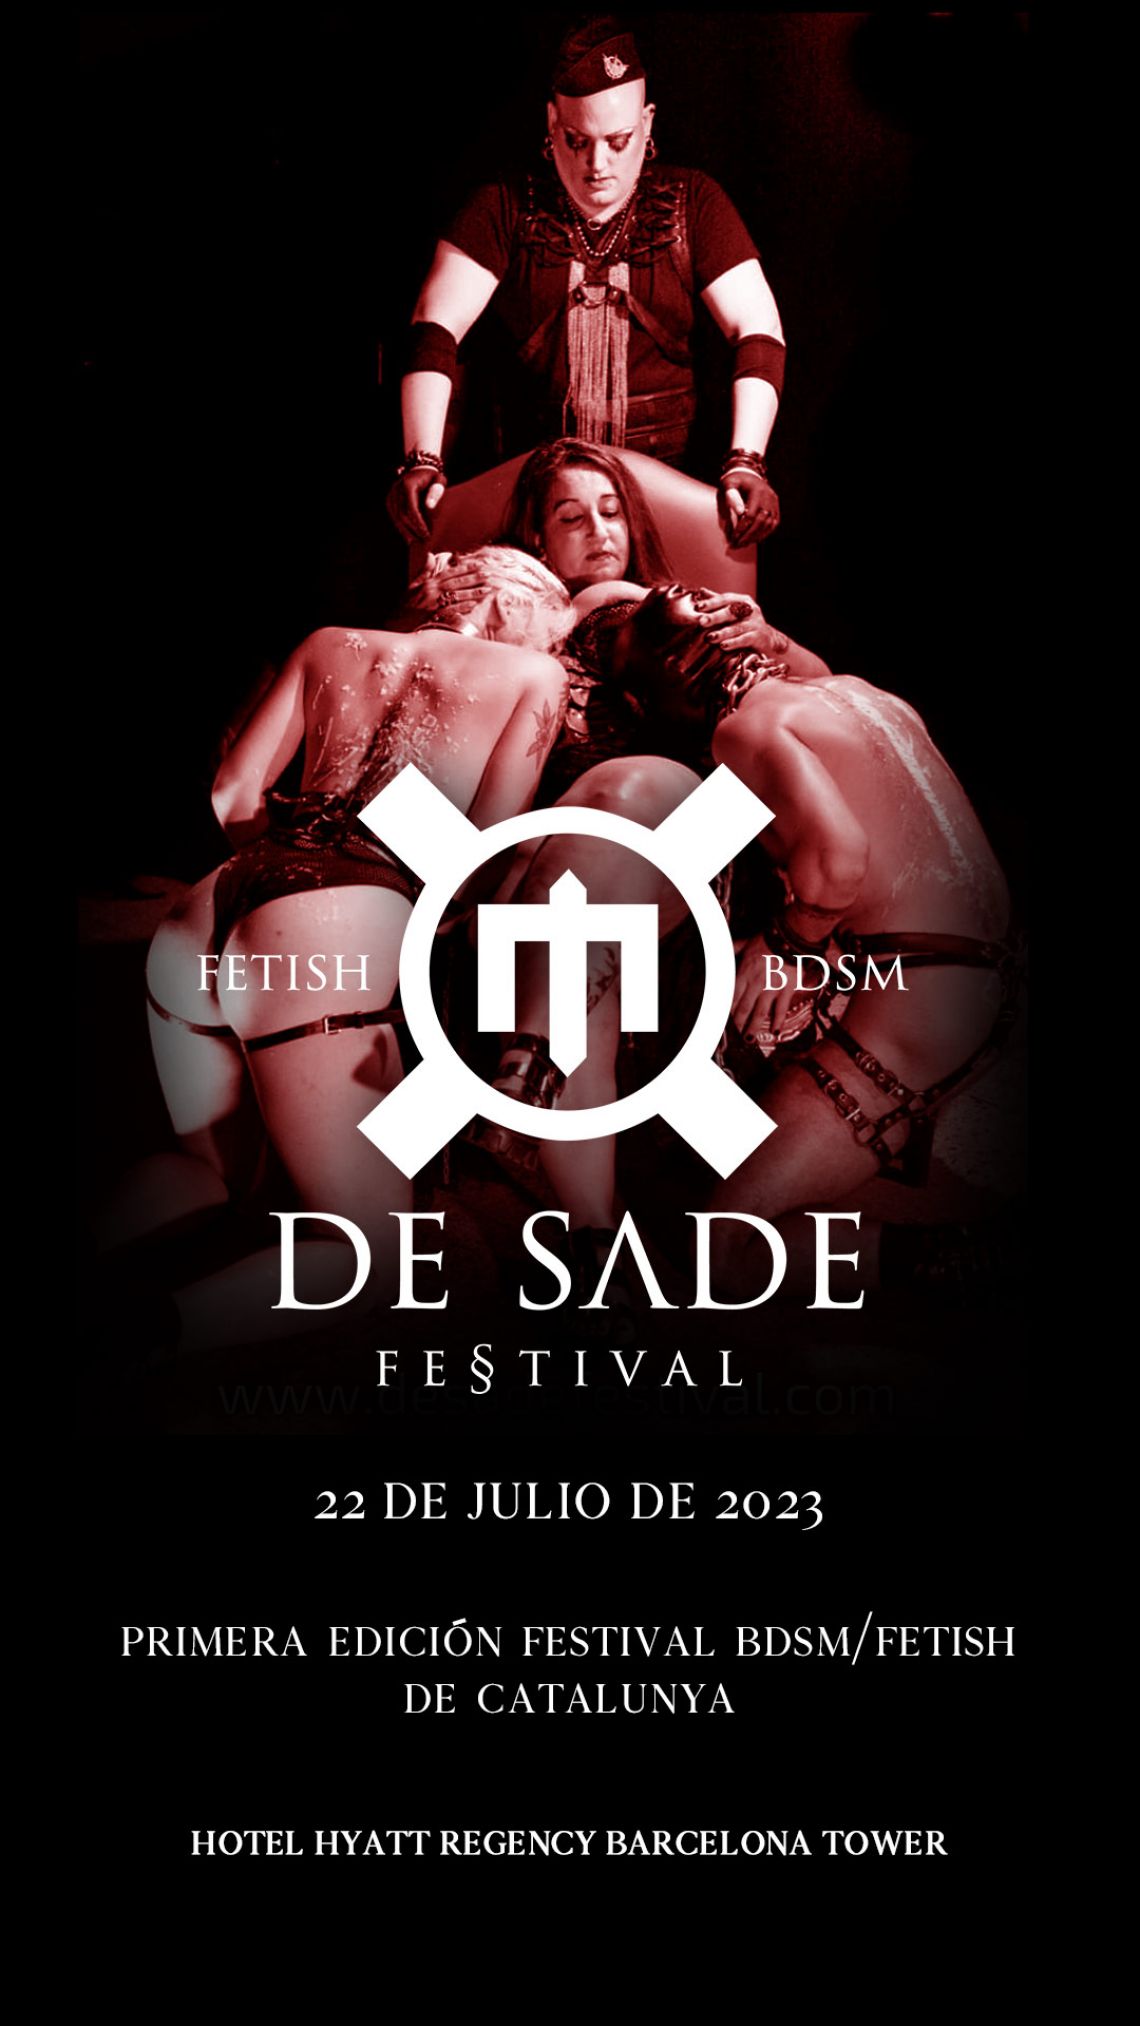 Festival BDSM DeSade